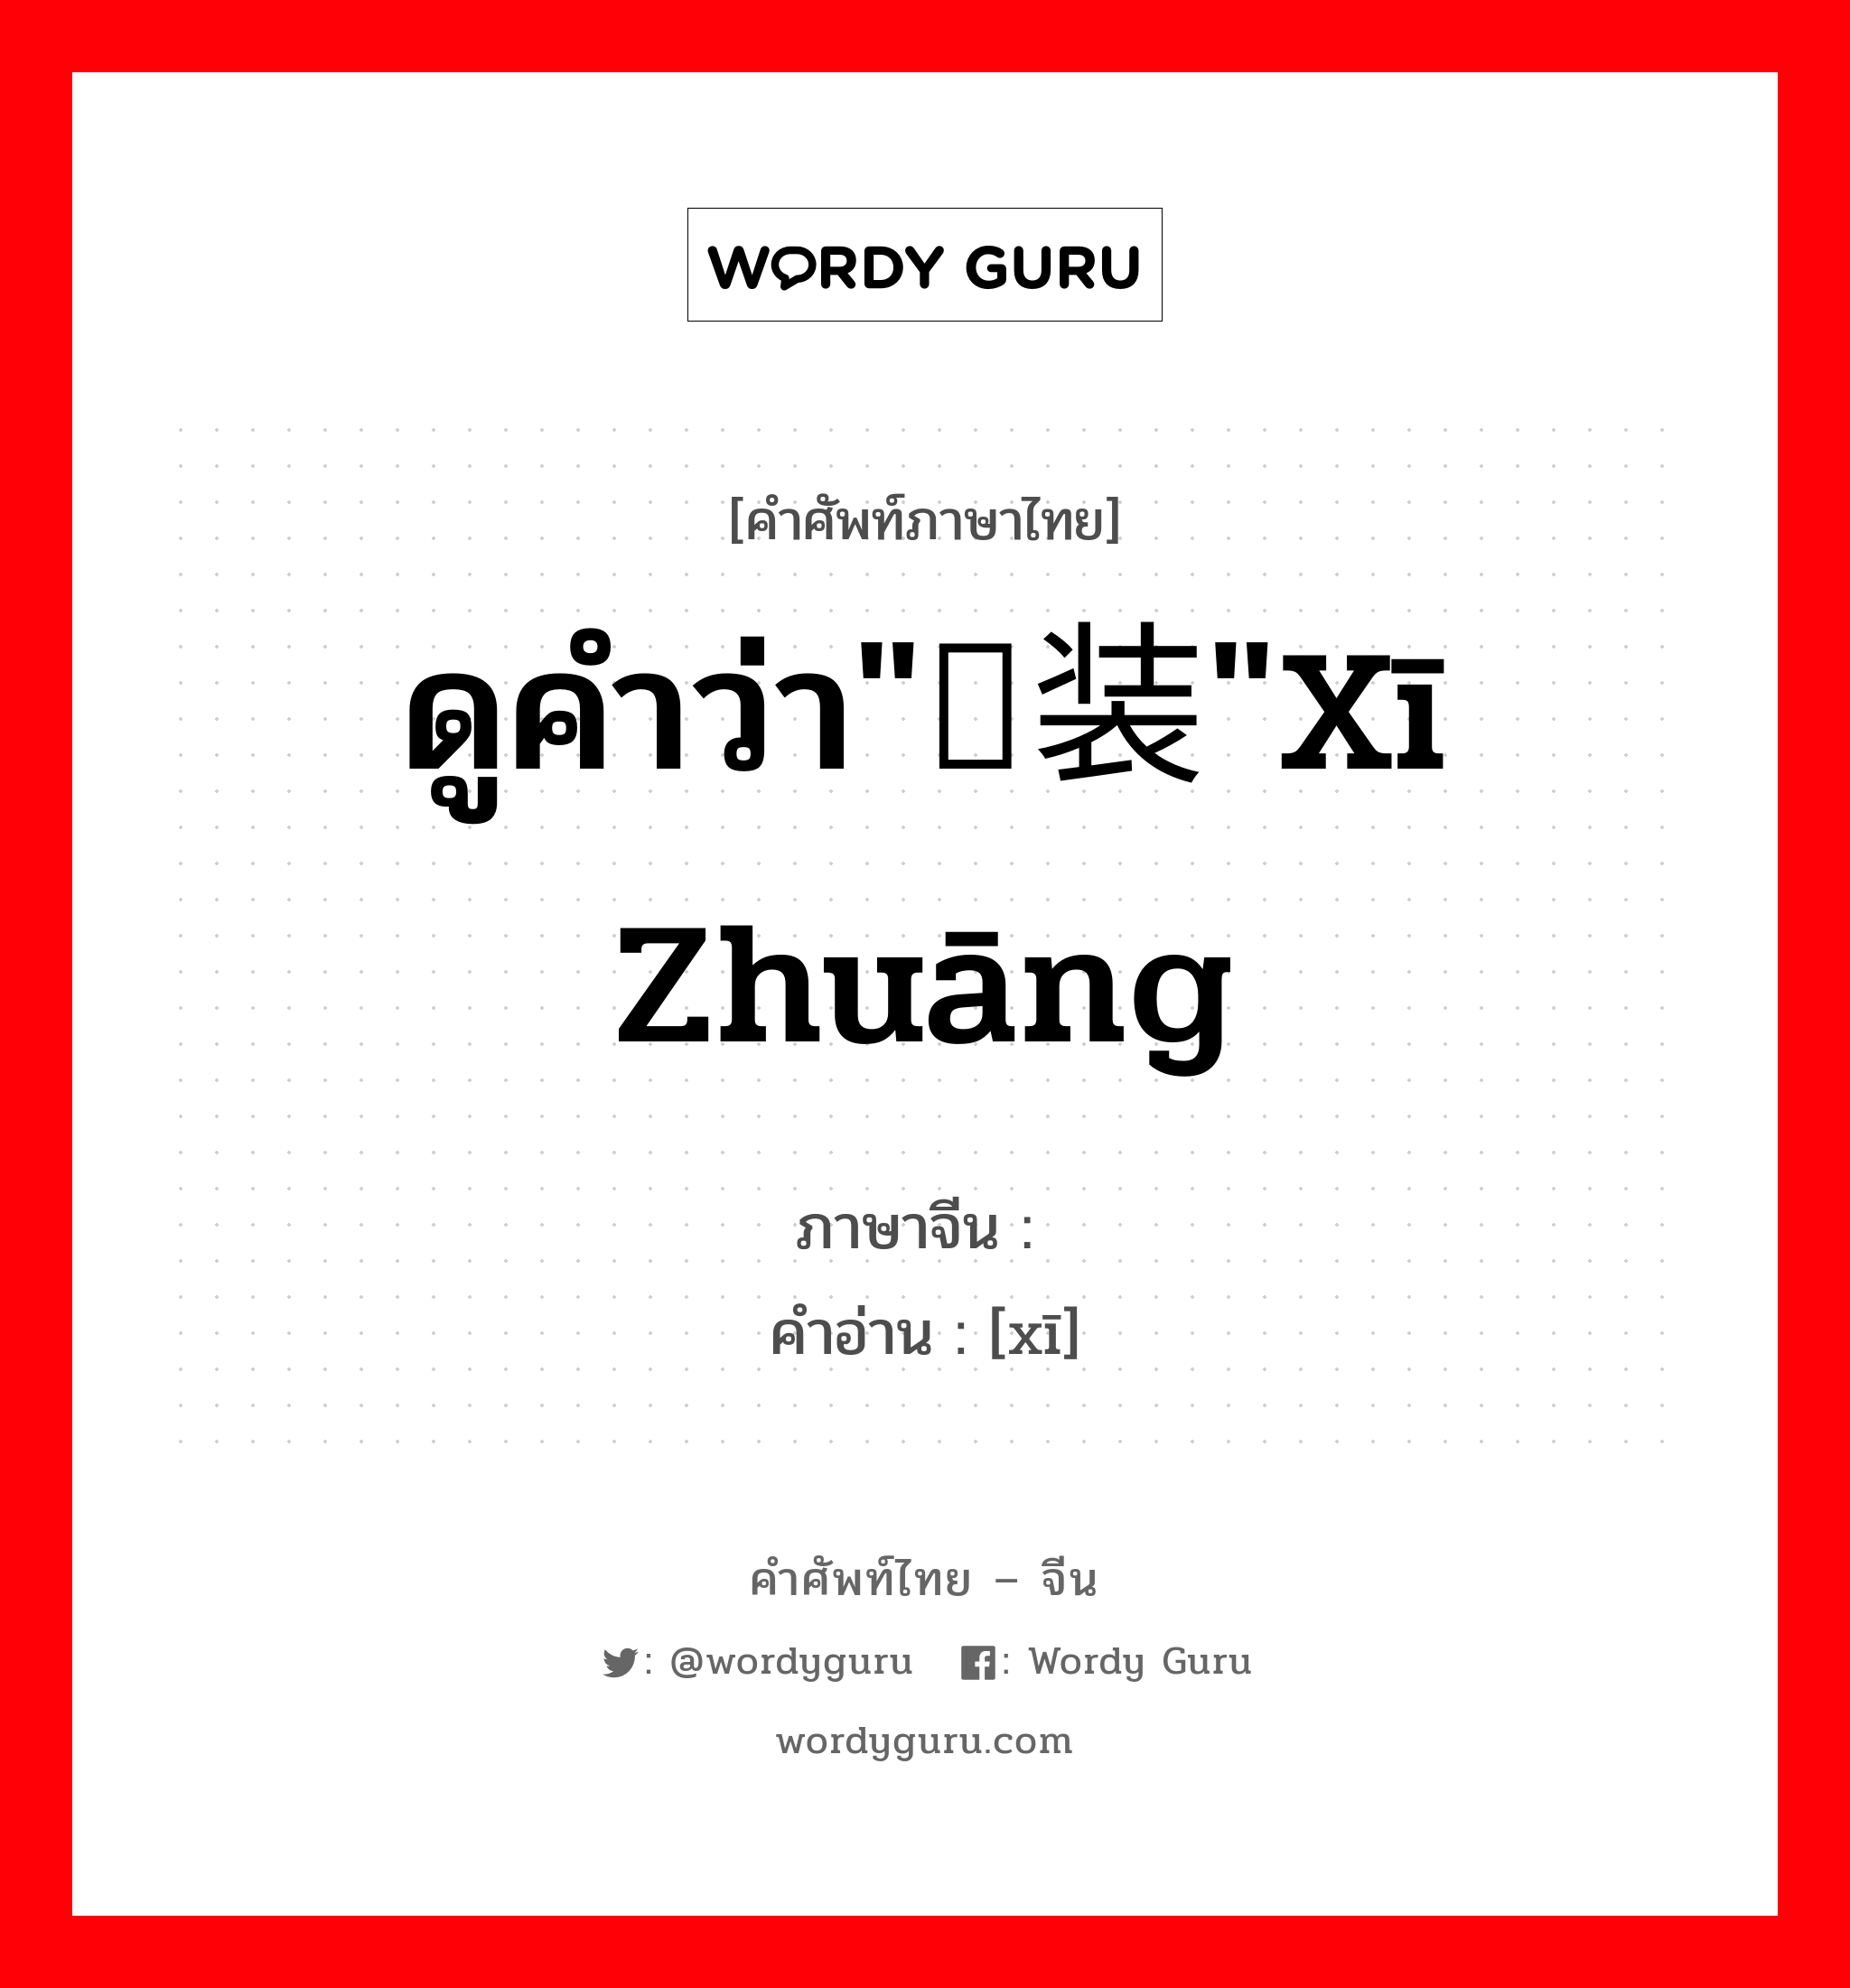 ดูคำว่า"舾装"xī zhuāng ภาษาจีนคืออะไร, คำศัพท์ภาษาไทย - จีน ดูคำว่า"舾装"xī zhuāng ภาษาจีน 舾 คำอ่าน [xī]